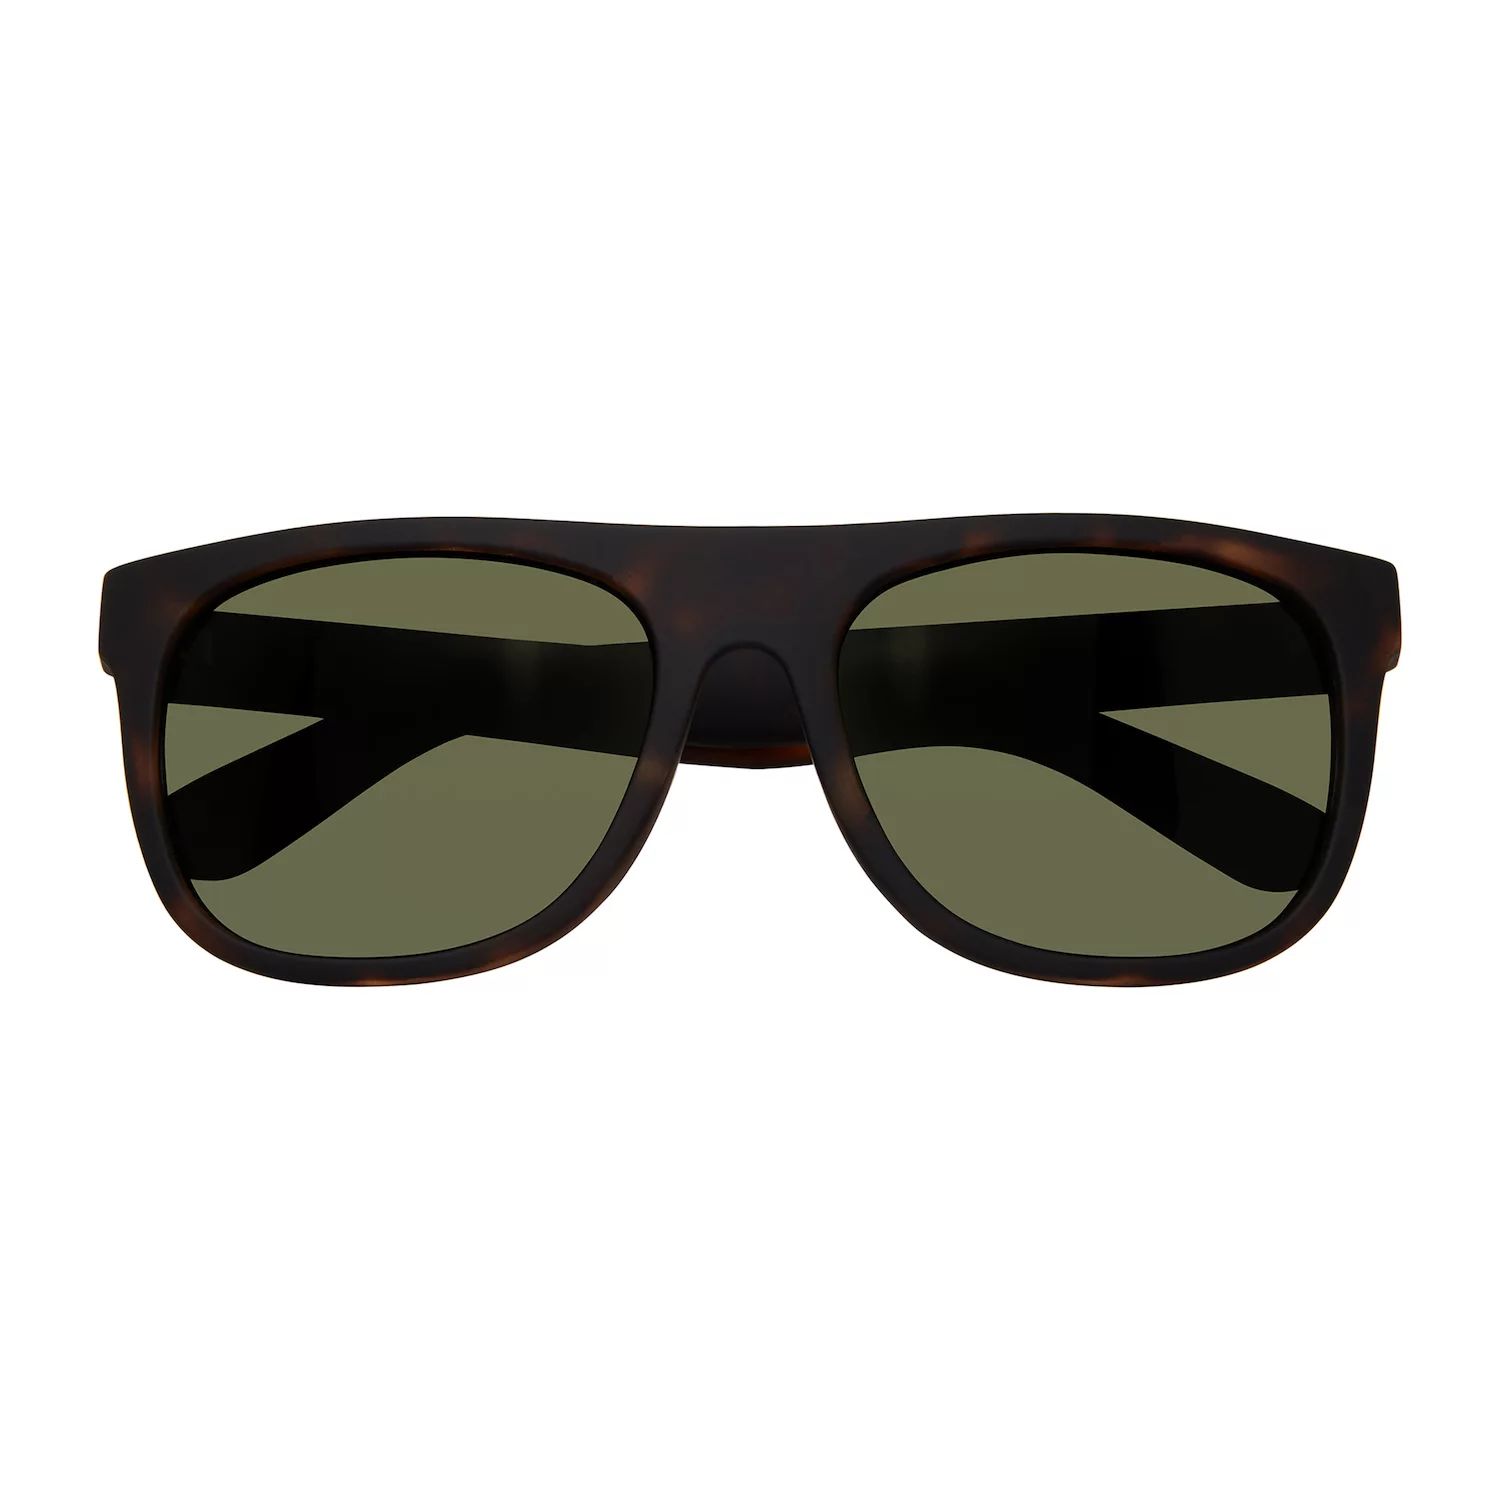 Мужские модные прямоугольные солнцезащитные очки Levi's 56 мм